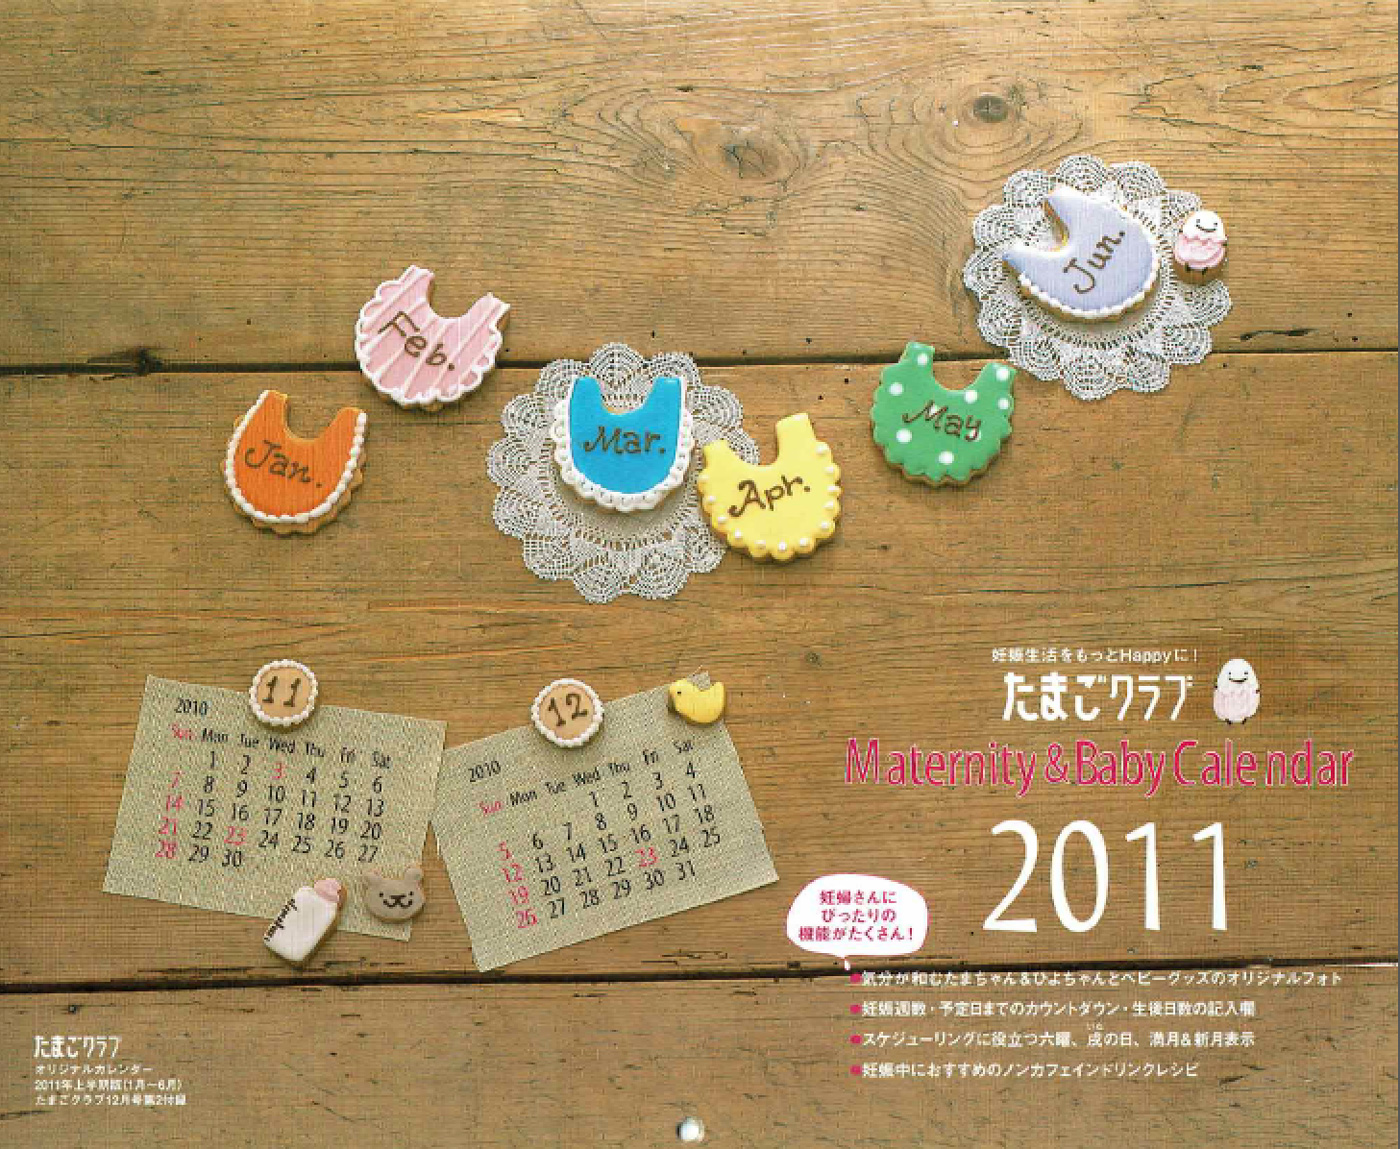 たまごクラブ 別冊2011カレンダー 表紙クッキー製作